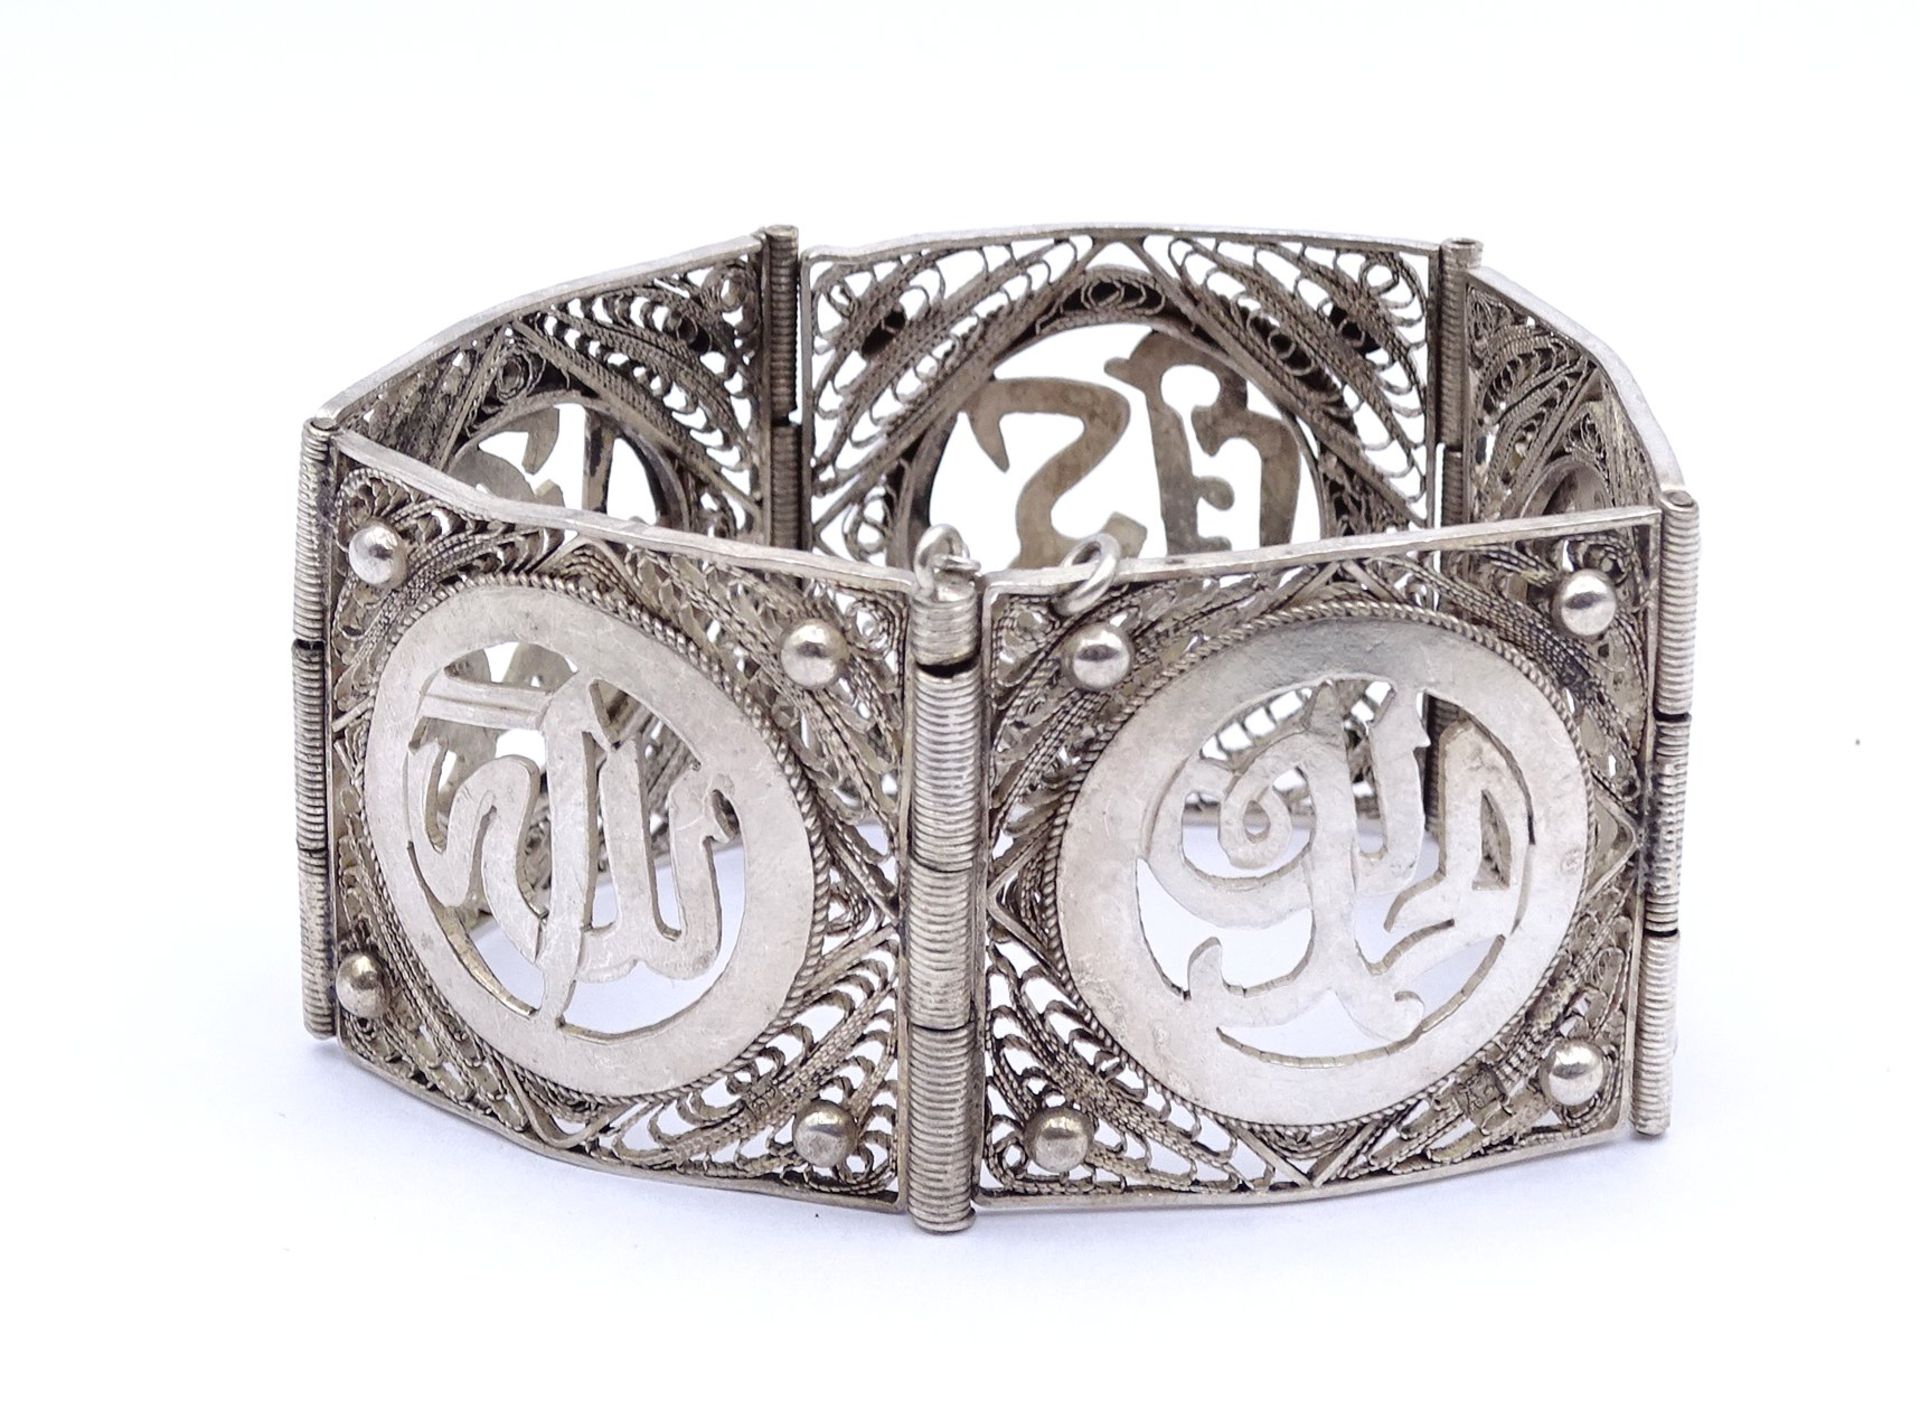 Orientalisches Silber Armband, ungestempelt - geprüft, L. 18cm, B. 3,5cm, 51,5g. - Bild 4 aus 5